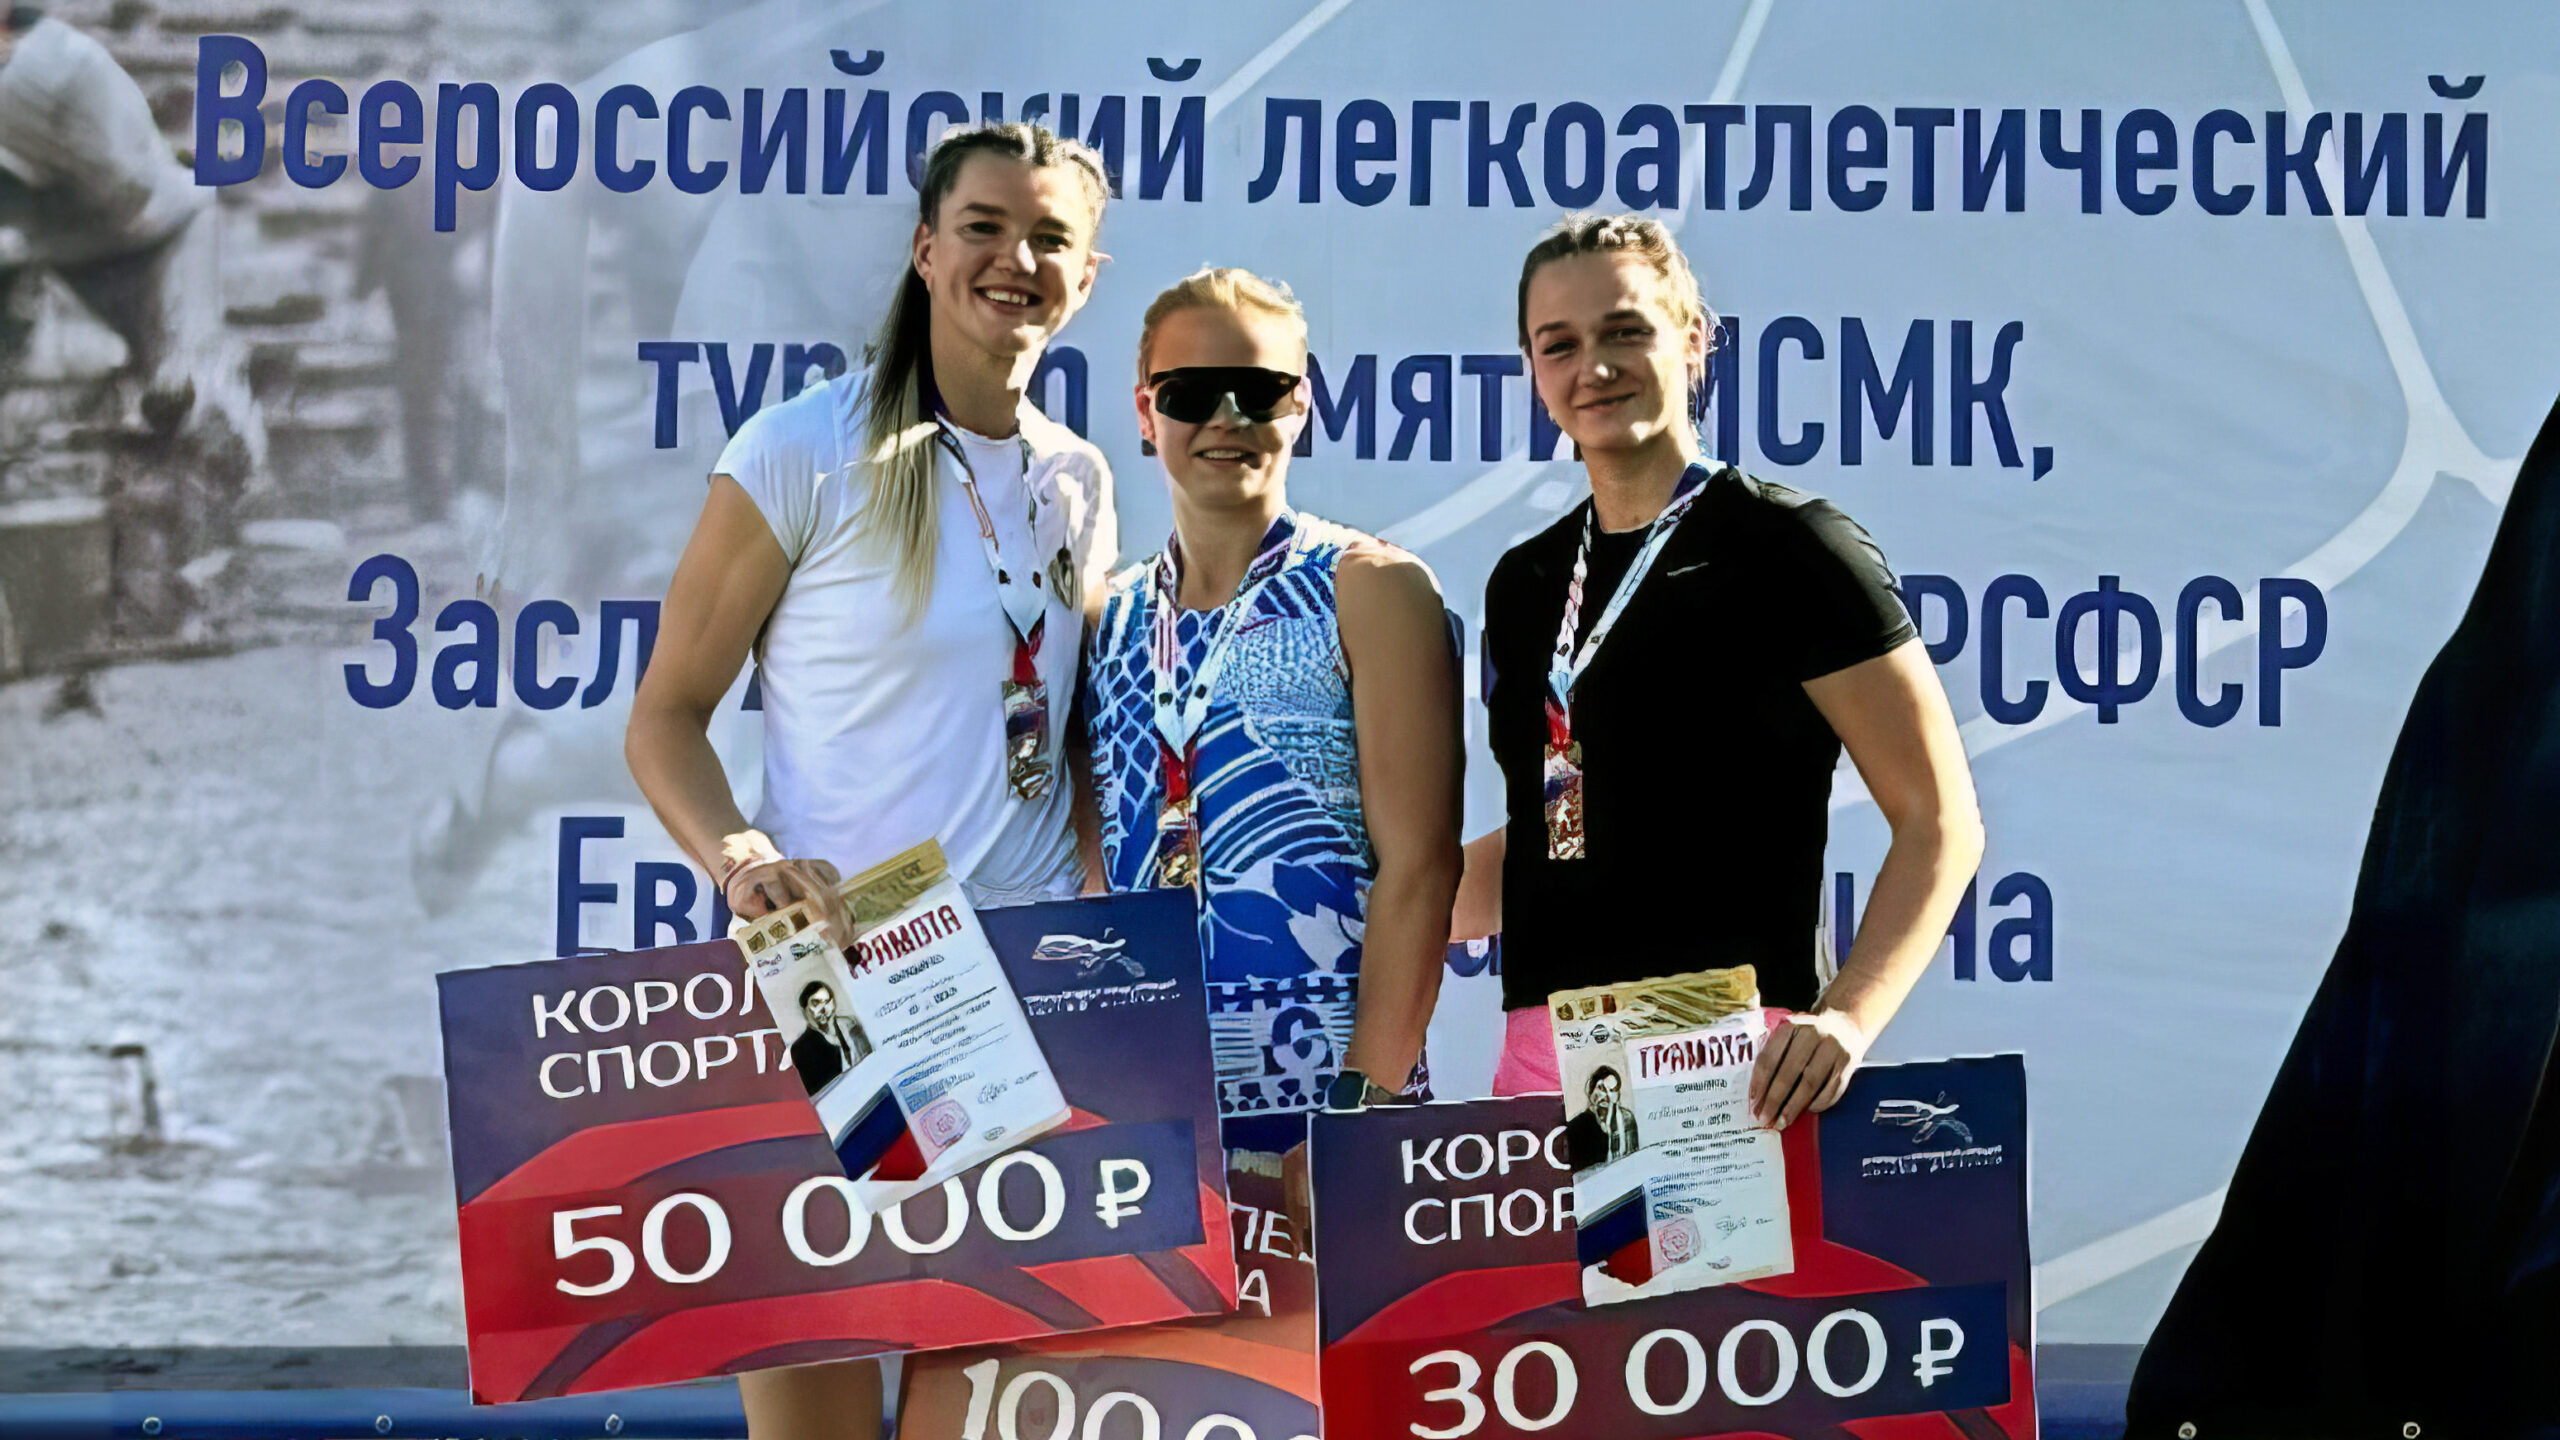 Дарья Шинкевич завоевала «бронзу» всероссийского легкоатлетического турнира